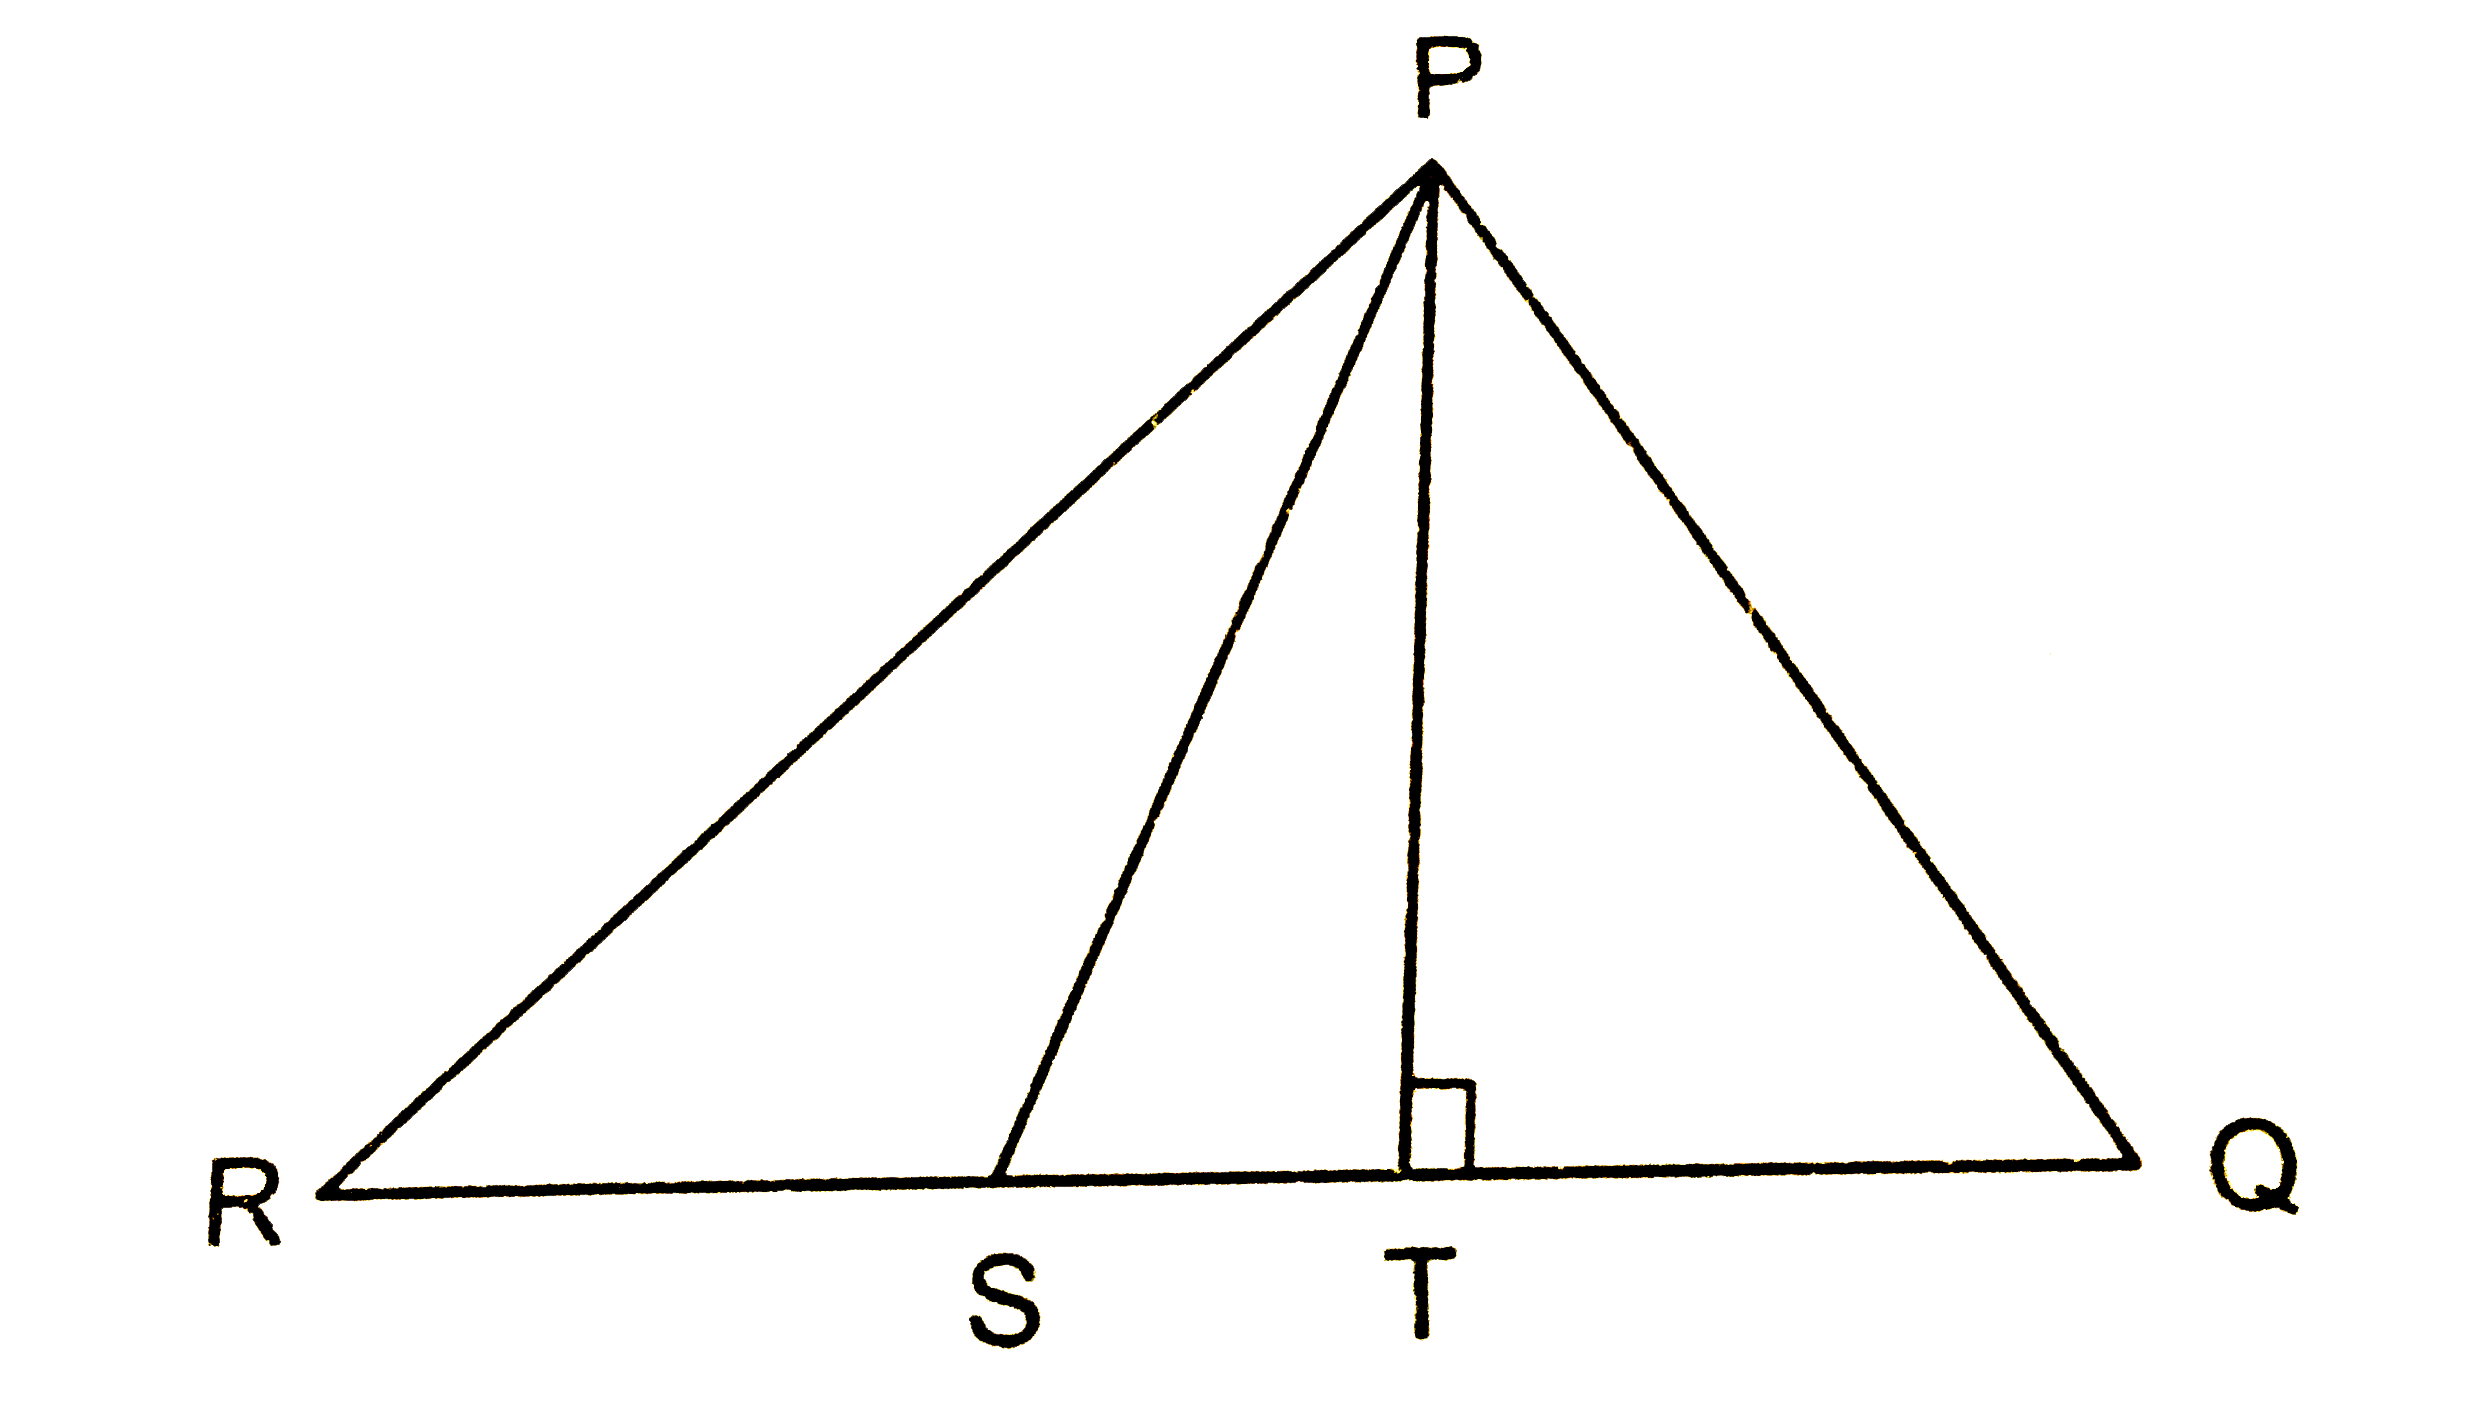 चित्र में,  angle QPR का समद्विभाजक PS , है और PT | RQ  तथा angle Q gt angle R है । दर्शाइए कि angle TPS = (1)/(2)(angle Q - angle R)